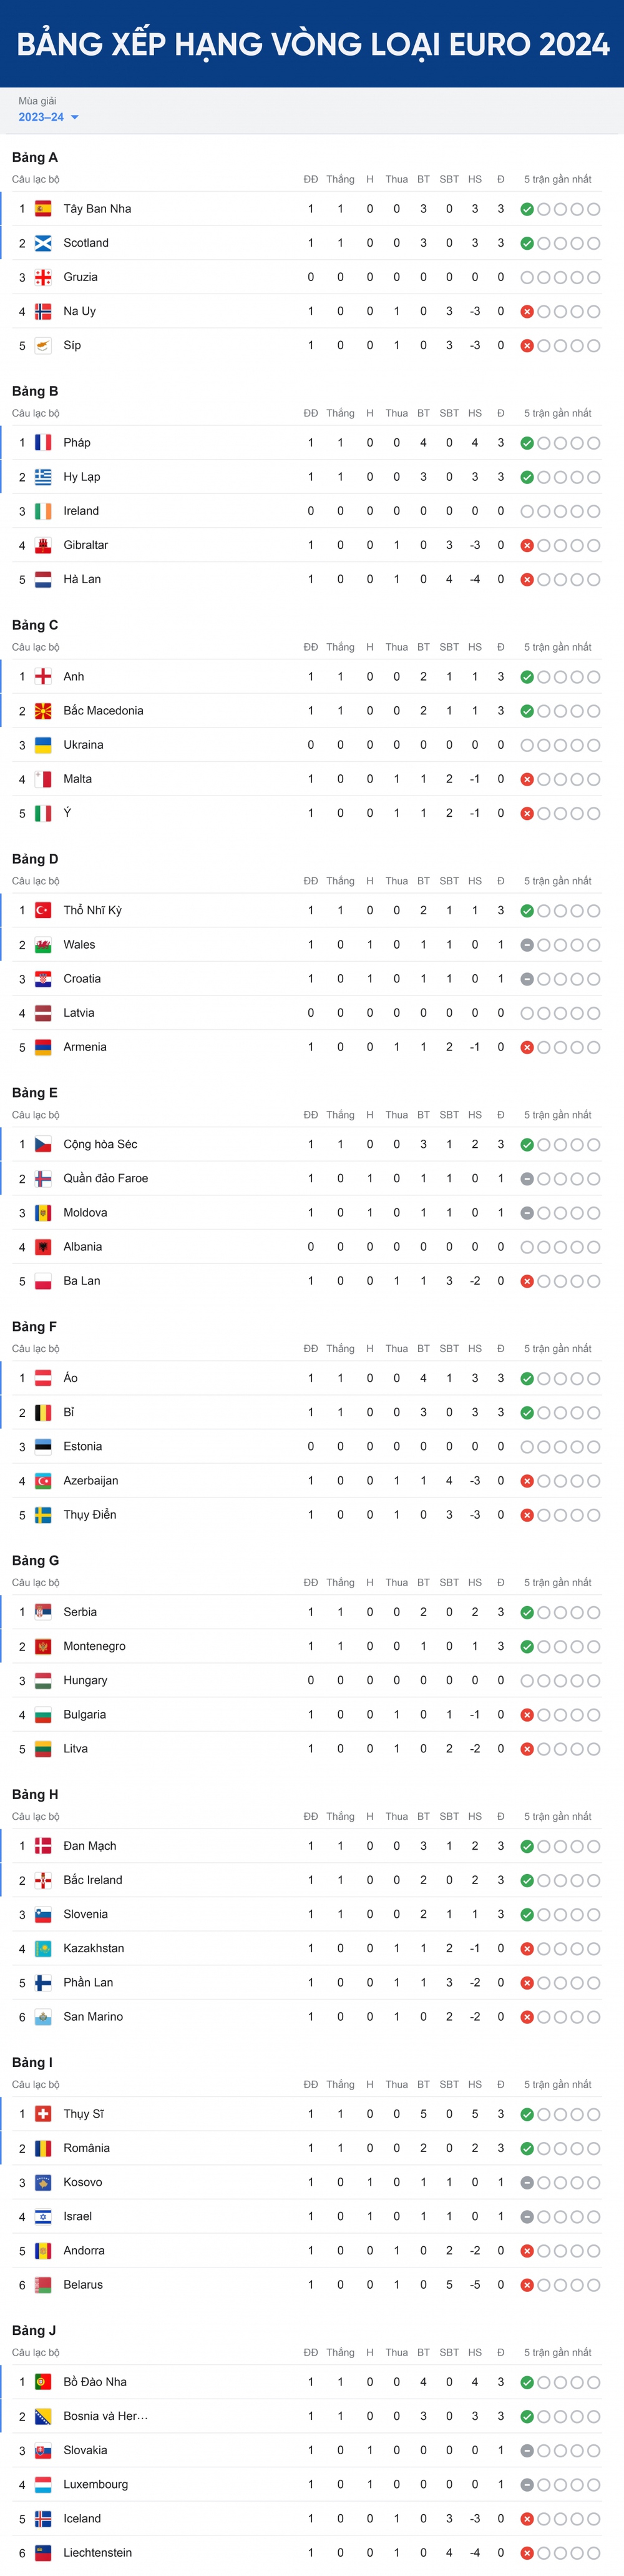 Bảng xếp hạng vòng loại EURO 2024 mới nhất: Bồ Đào Nha và Anh dẫn đầu - Ảnh 1.